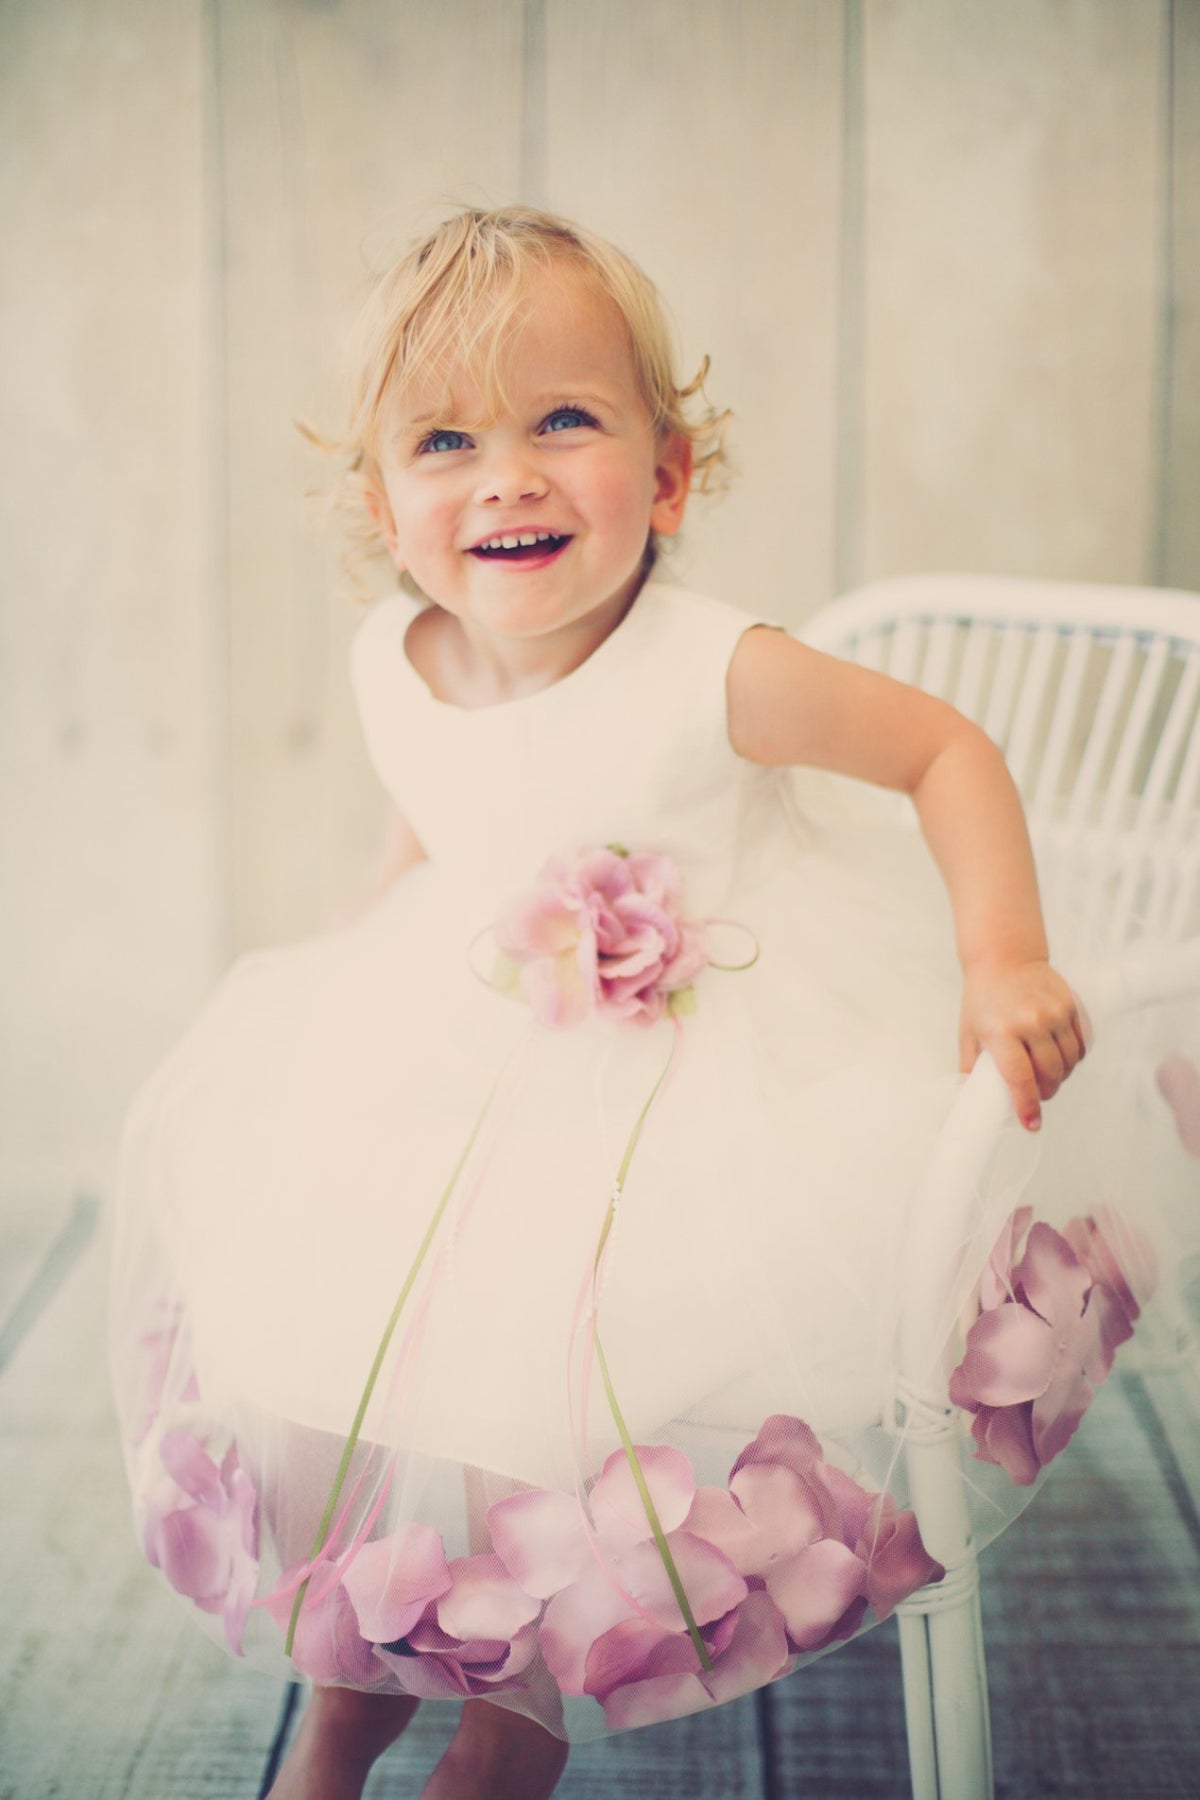 White Satin Flower Petal Baby Dress